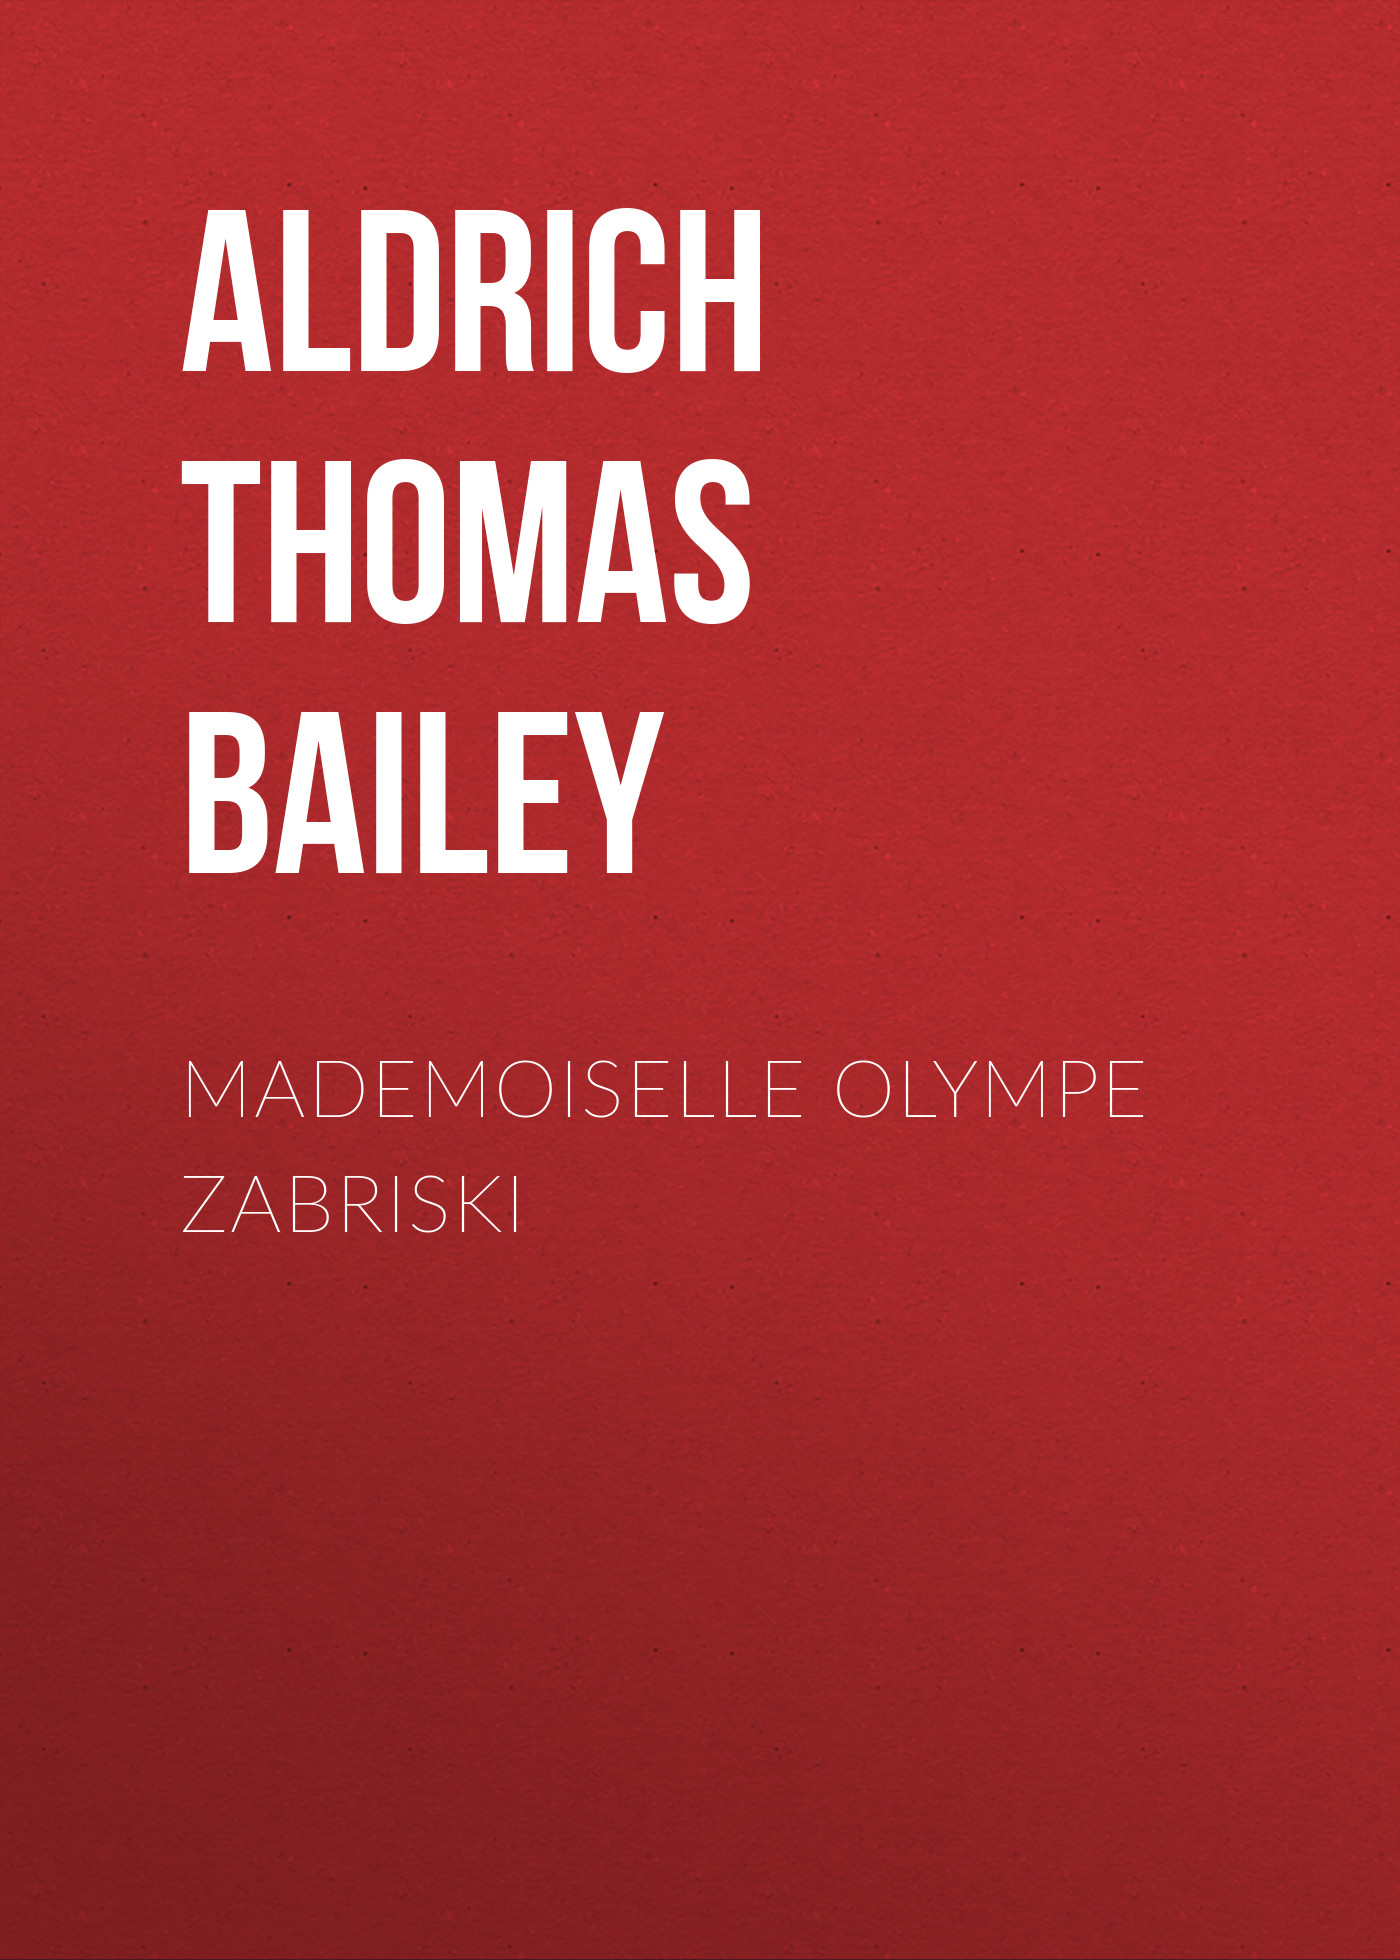 Книга Mademoiselle Olympe Zabriski из серии , созданная Thomas Aldrich, может относится к жанру Зарубежная классика, Литература 19 века, Зарубежная старинная литература. Стоимость электронной книги Mademoiselle Olympe Zabriski с идентификатором 36367470 составляет 0 руб.